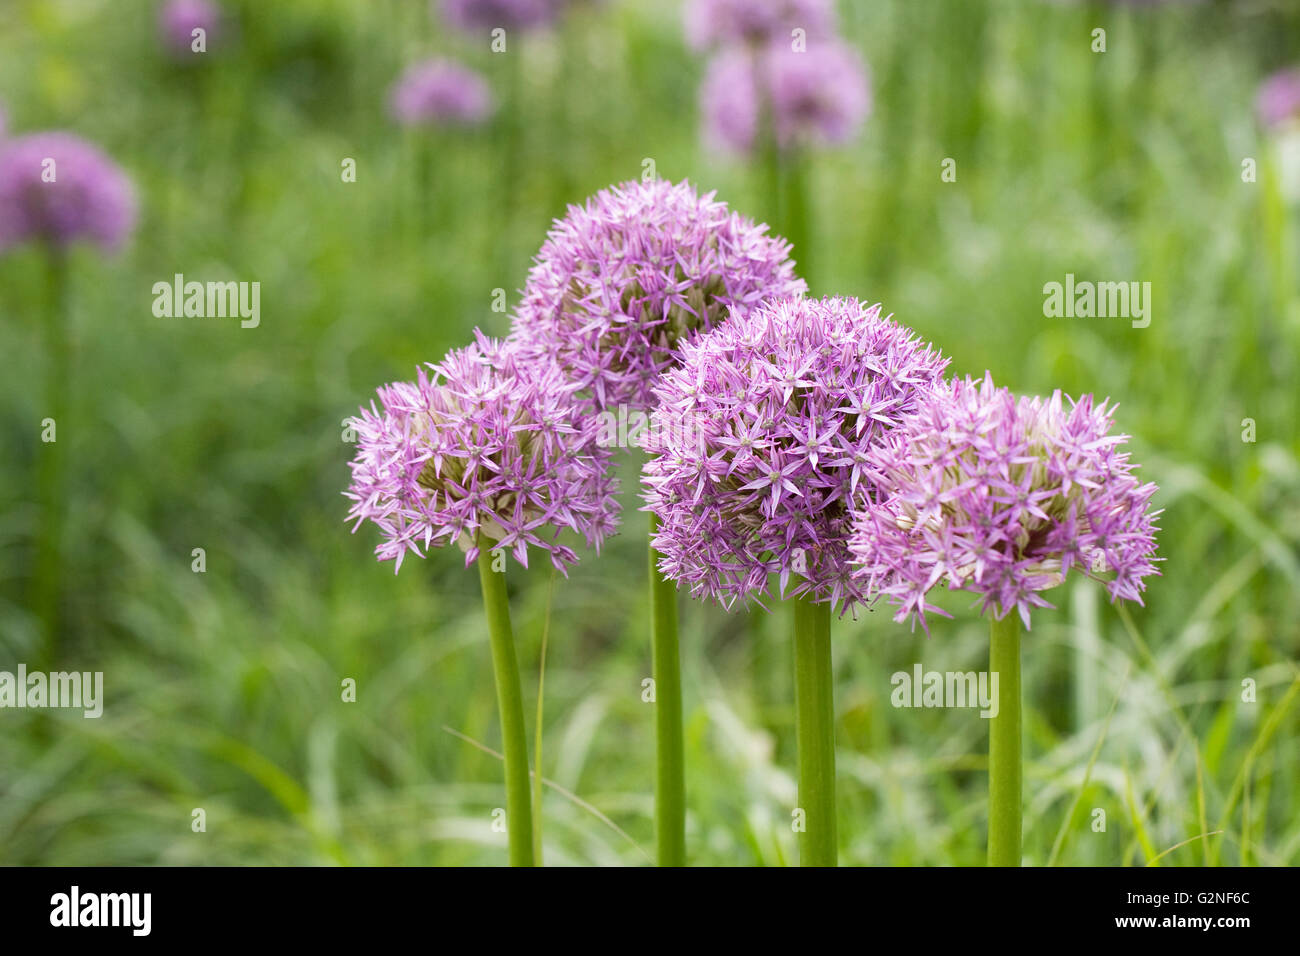 Allium 'Pinball Wizard' growing an English garden. Stock Photo